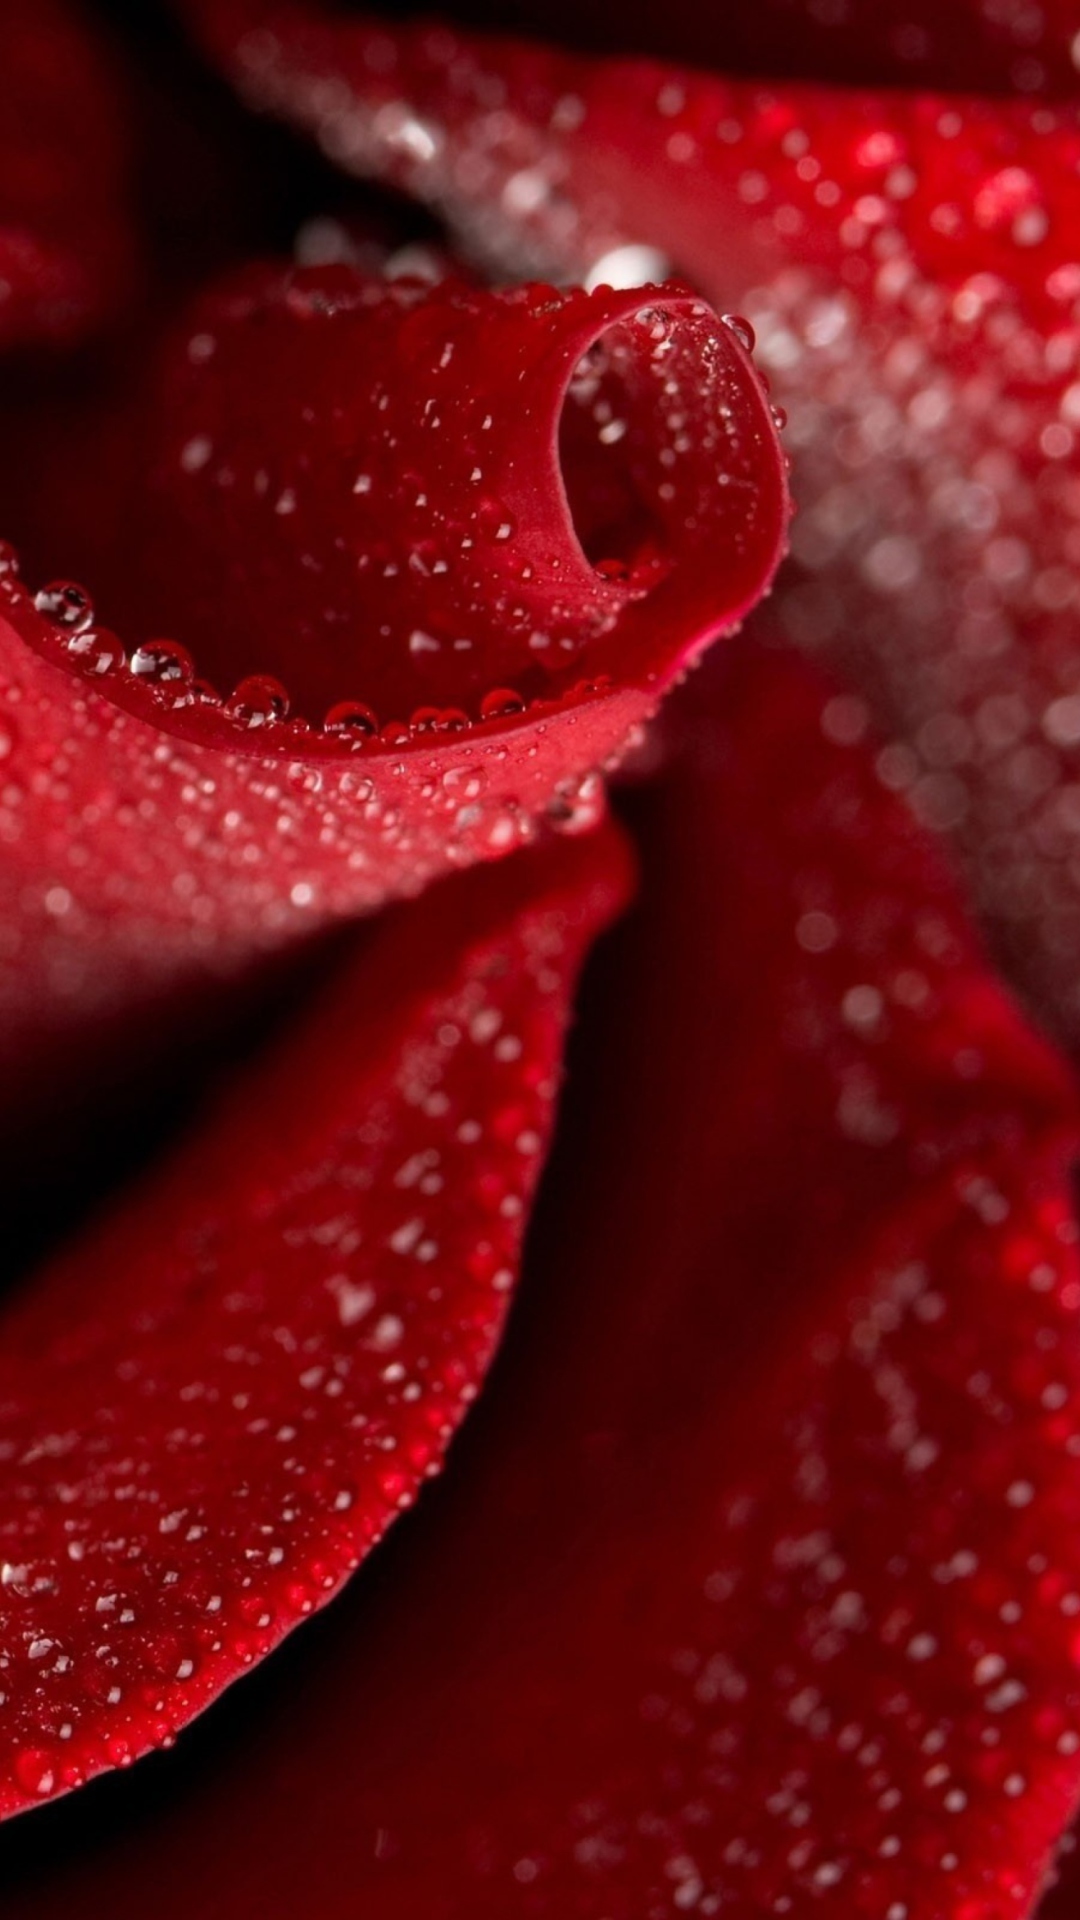 Red Rose Petals wallpaper 1080x1920